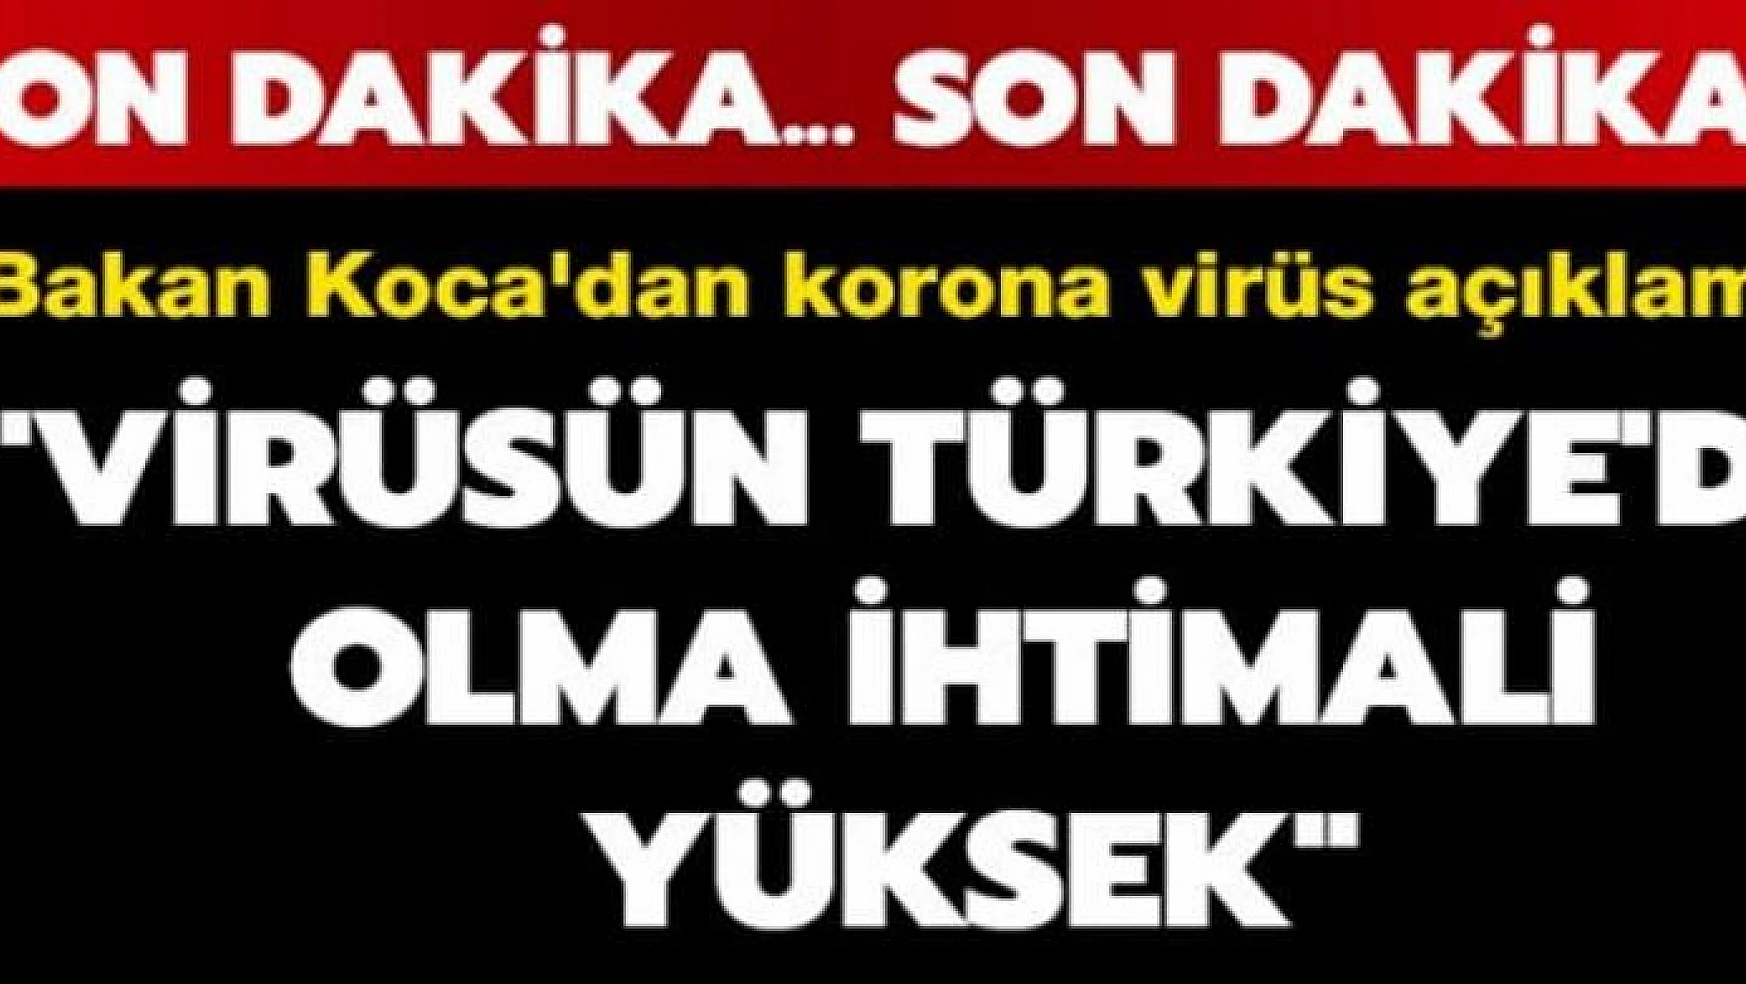 Bakan Koca'dan korona virüs açıklaması: Bu salgının şu anda Türkiye'de olma ihtimali çok yüksek